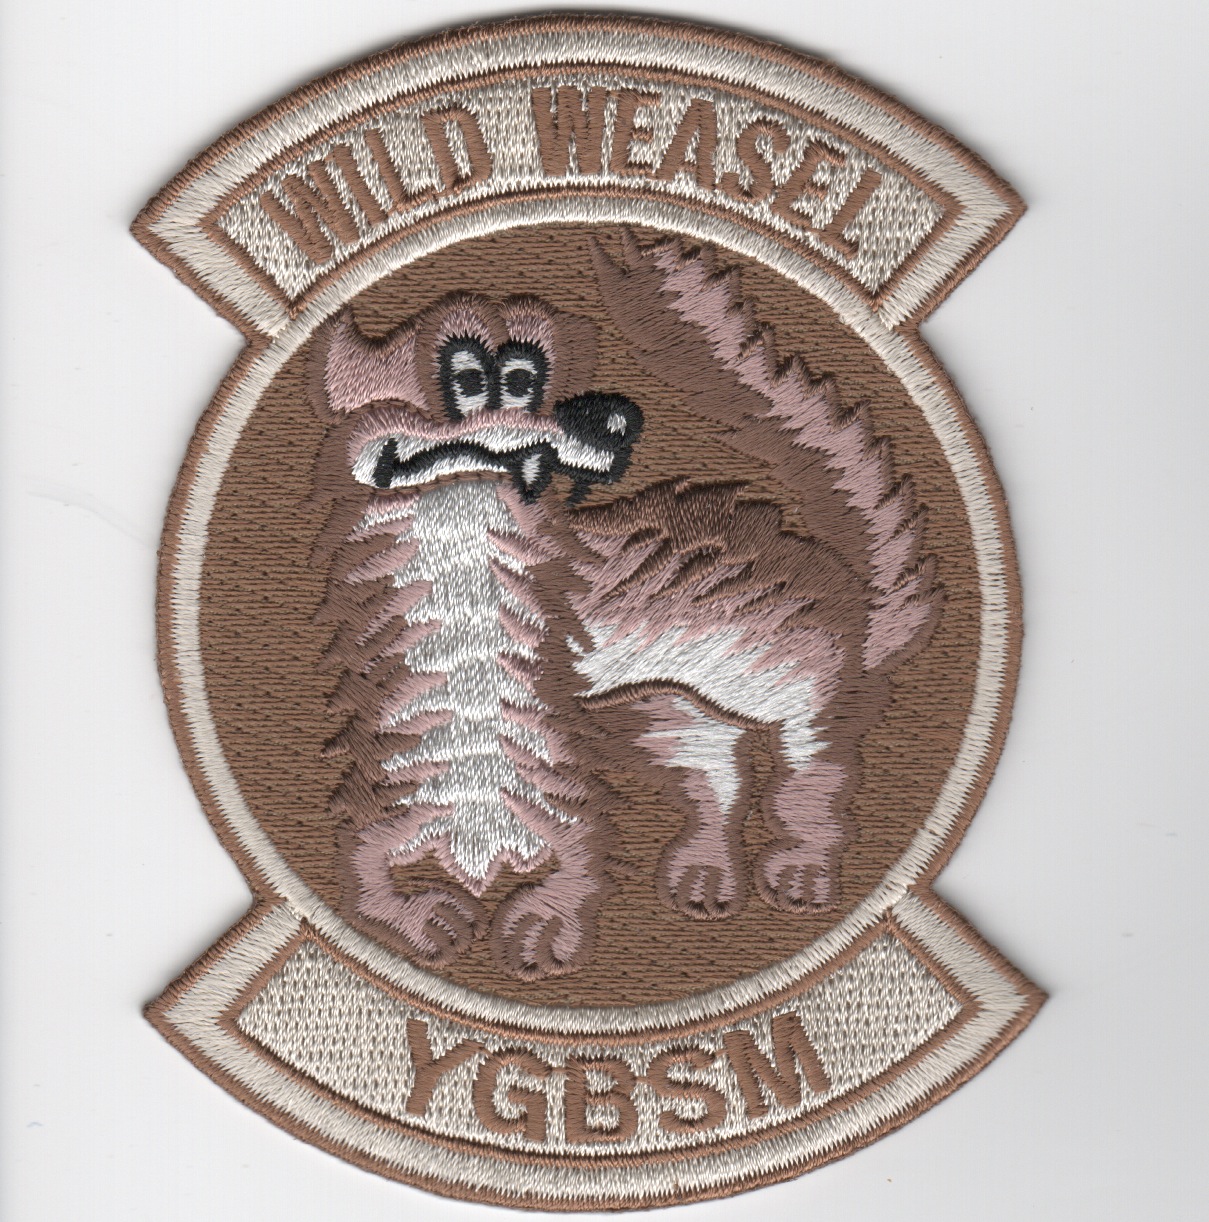 Wild Weasel 'YGBSM' (Des)